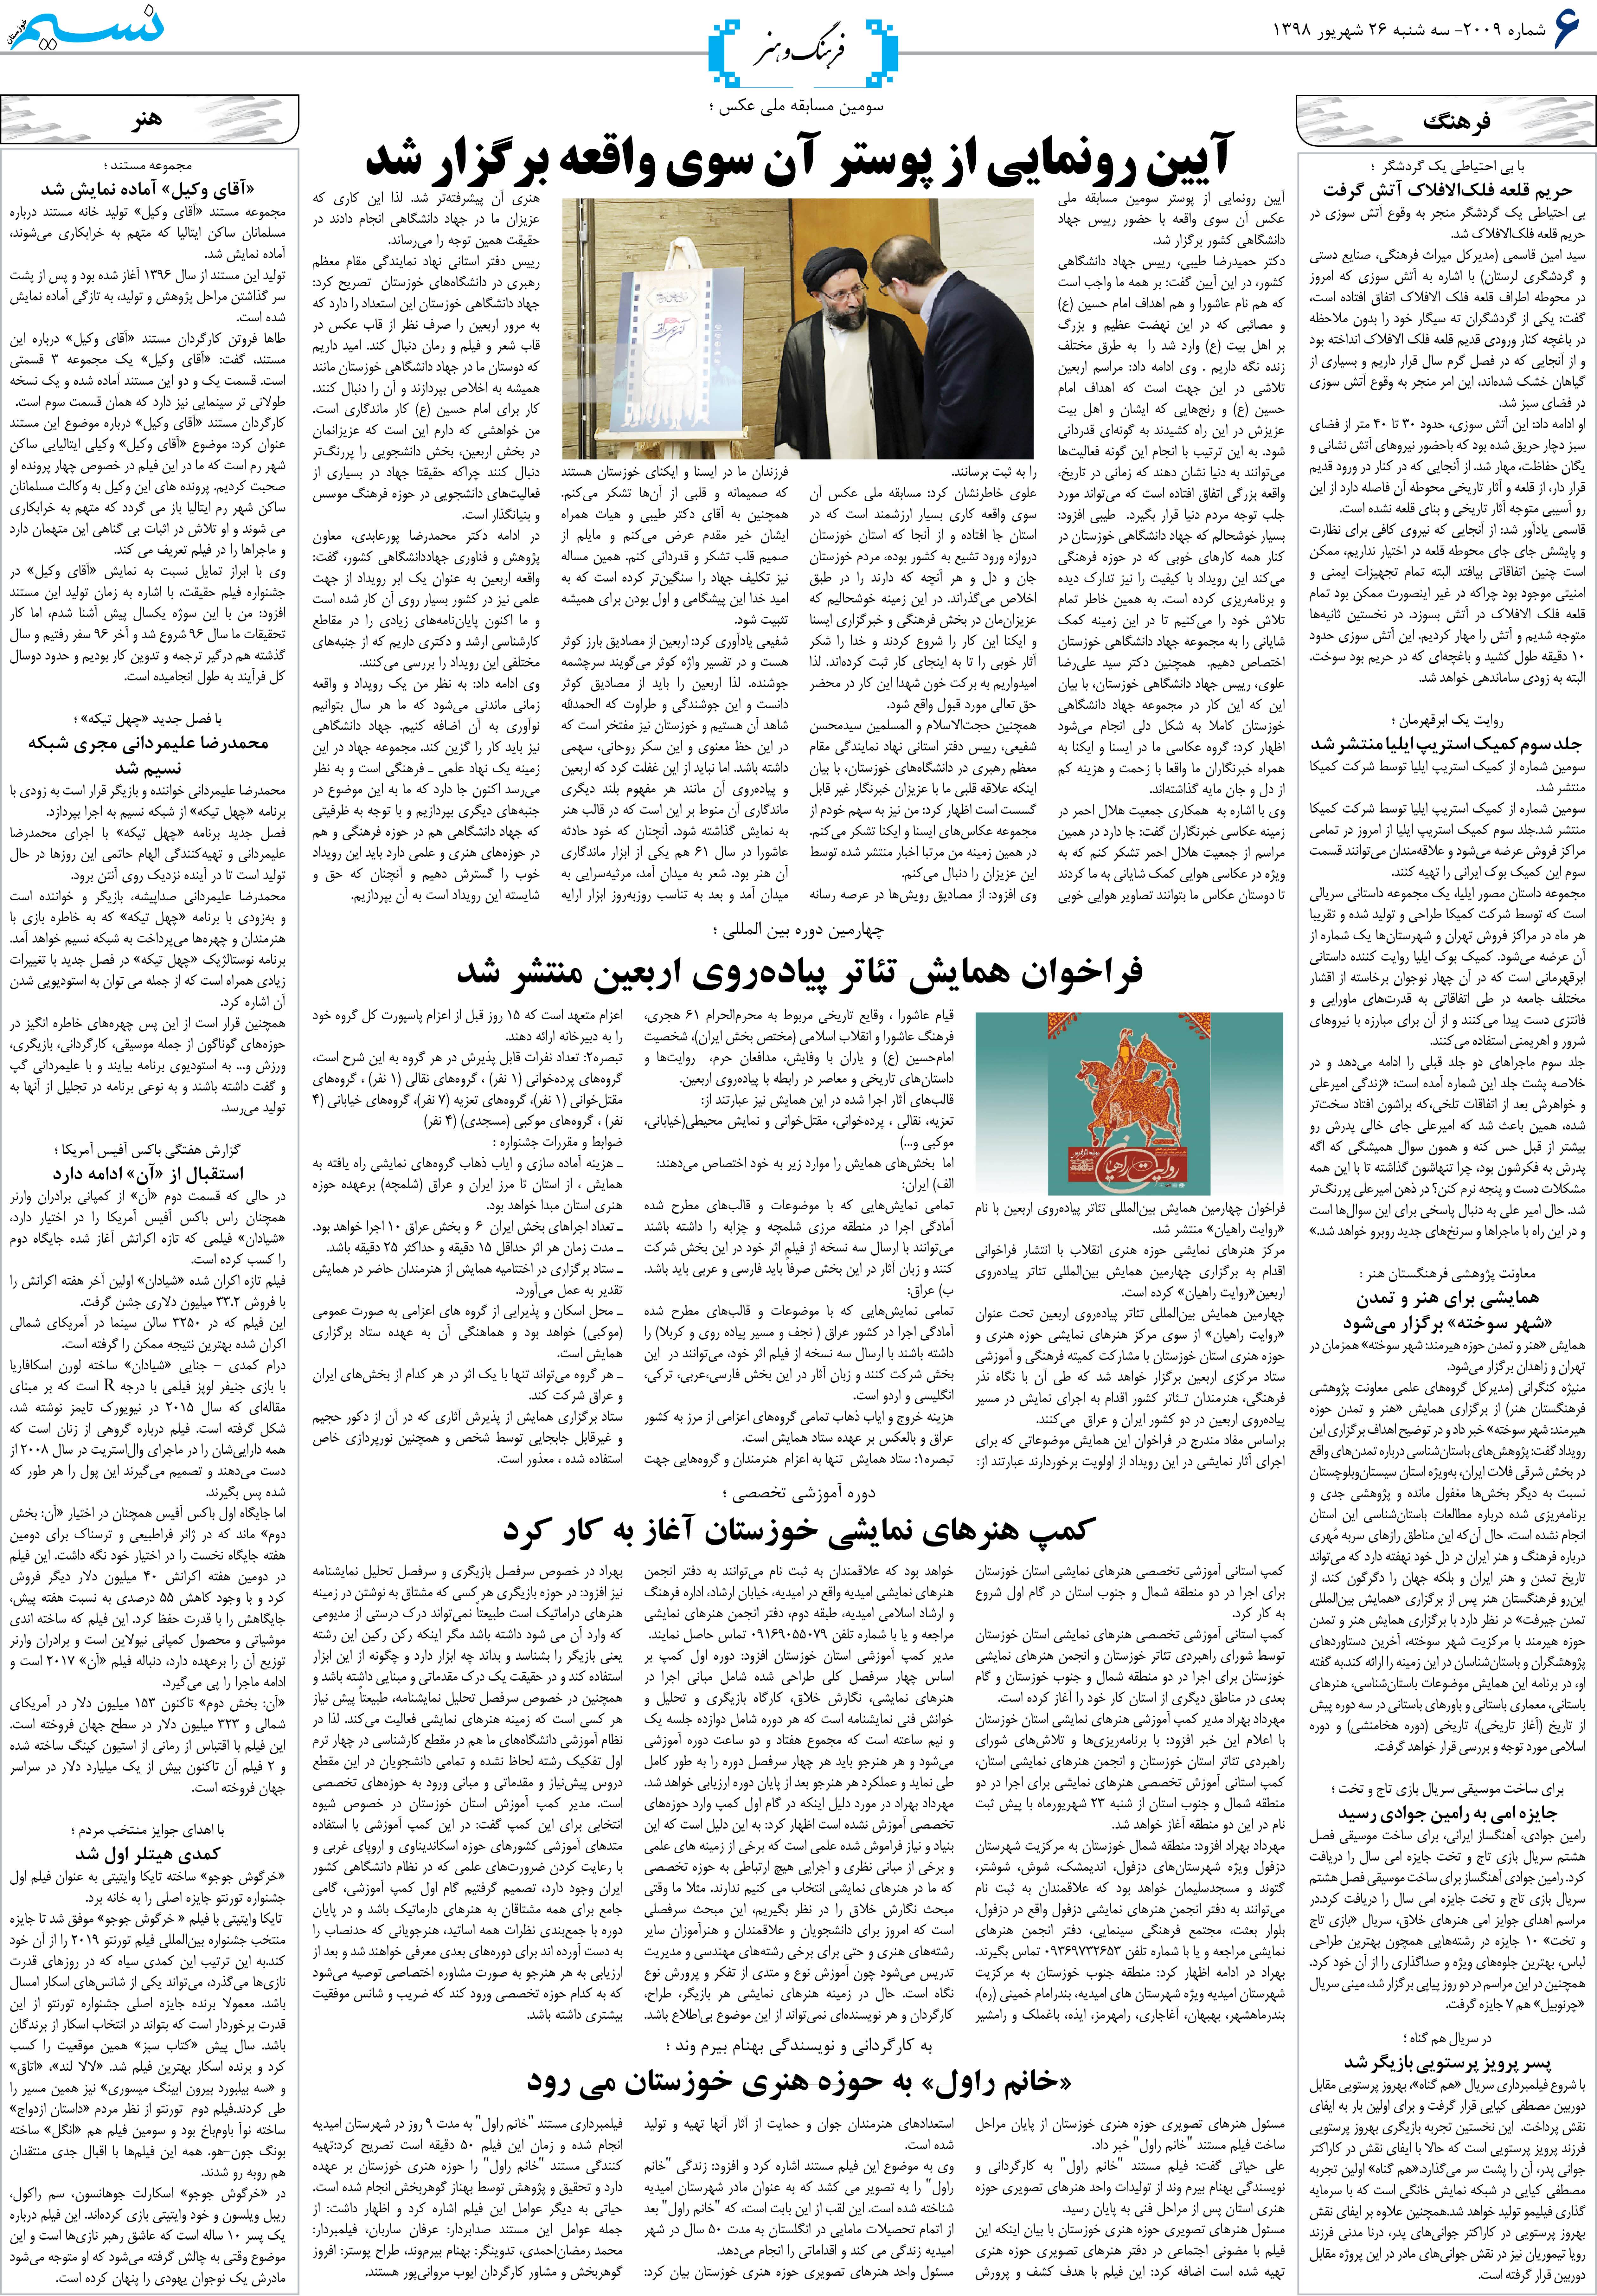 صفحه فرهنگ و هنر روزنامه نسیم شماره 2009